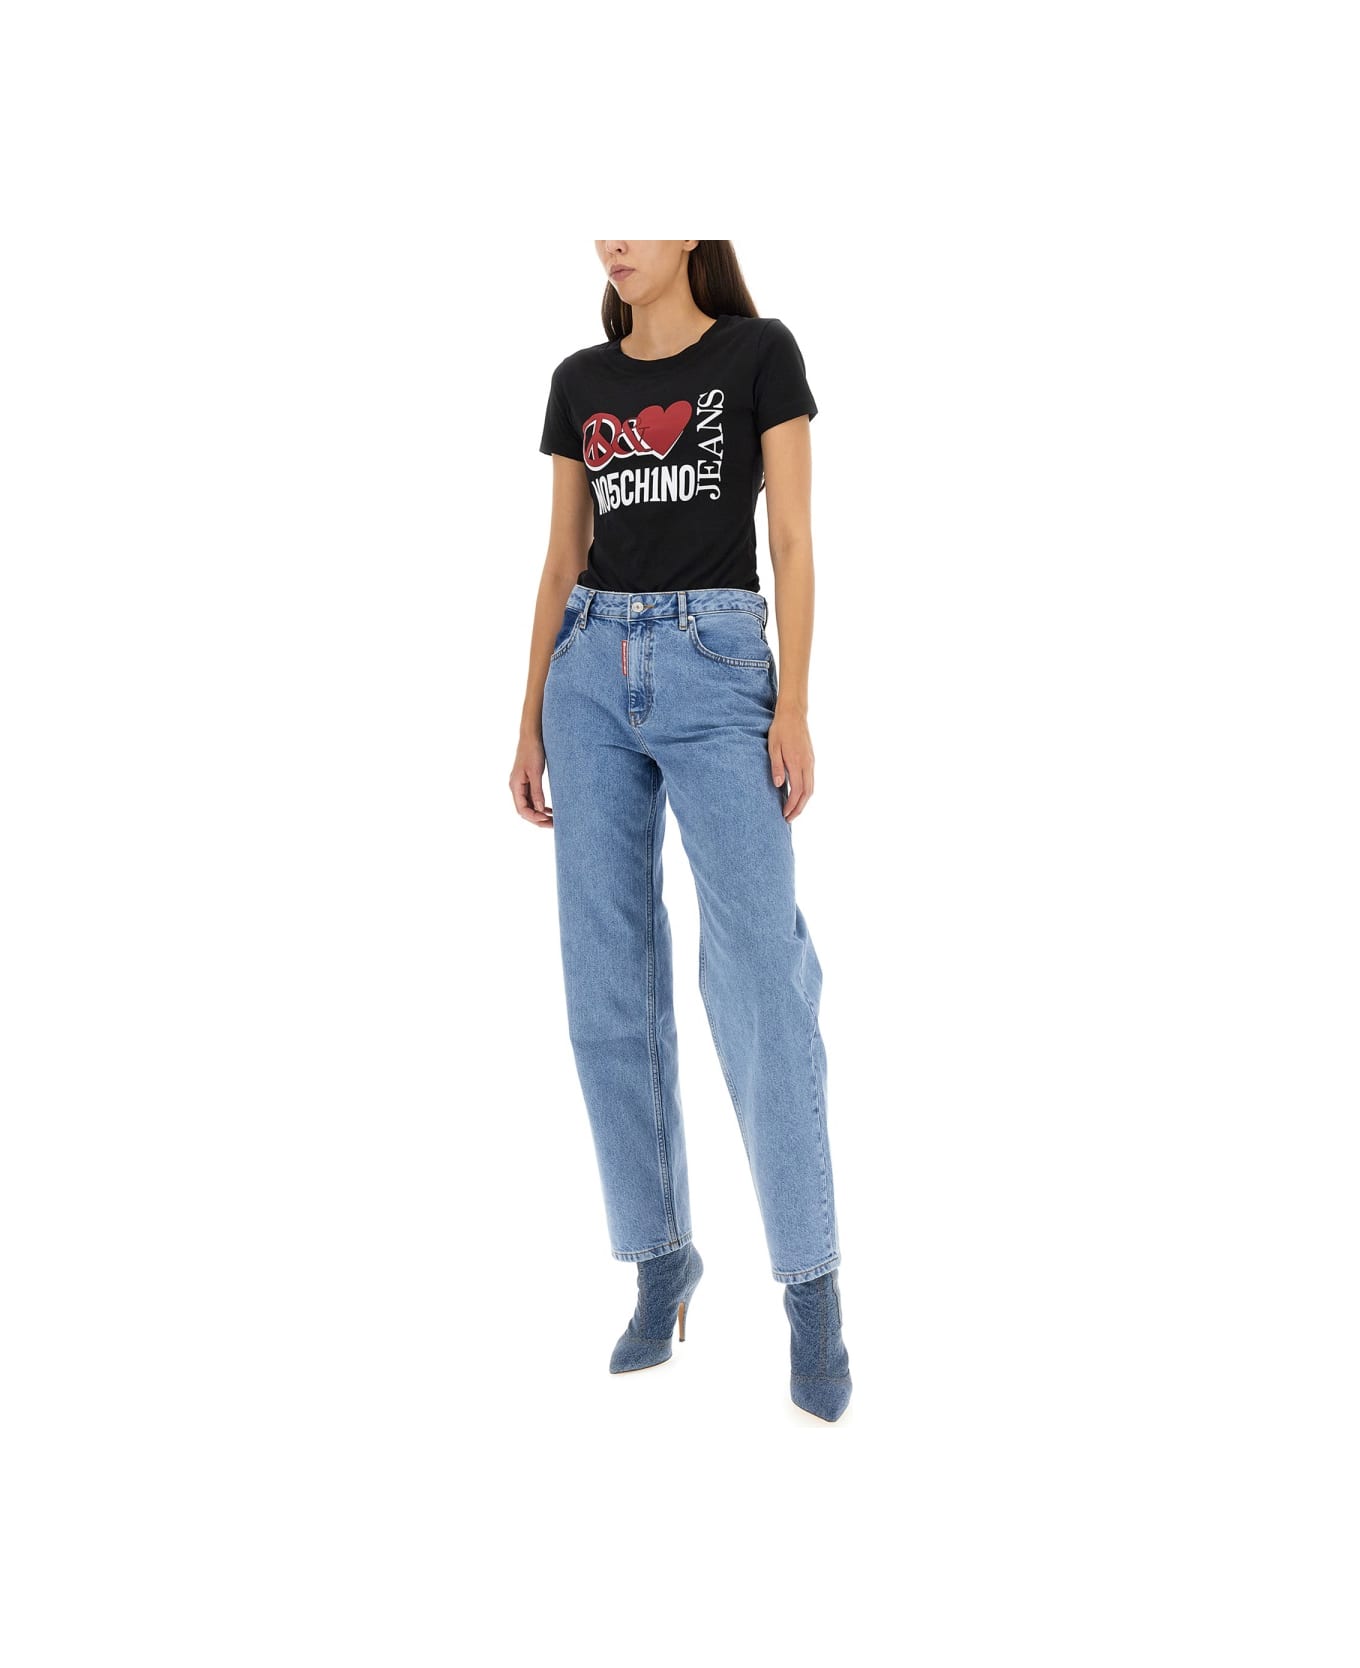 M05CH1N0 Jeans Peace & Love T-shirt - BLACK